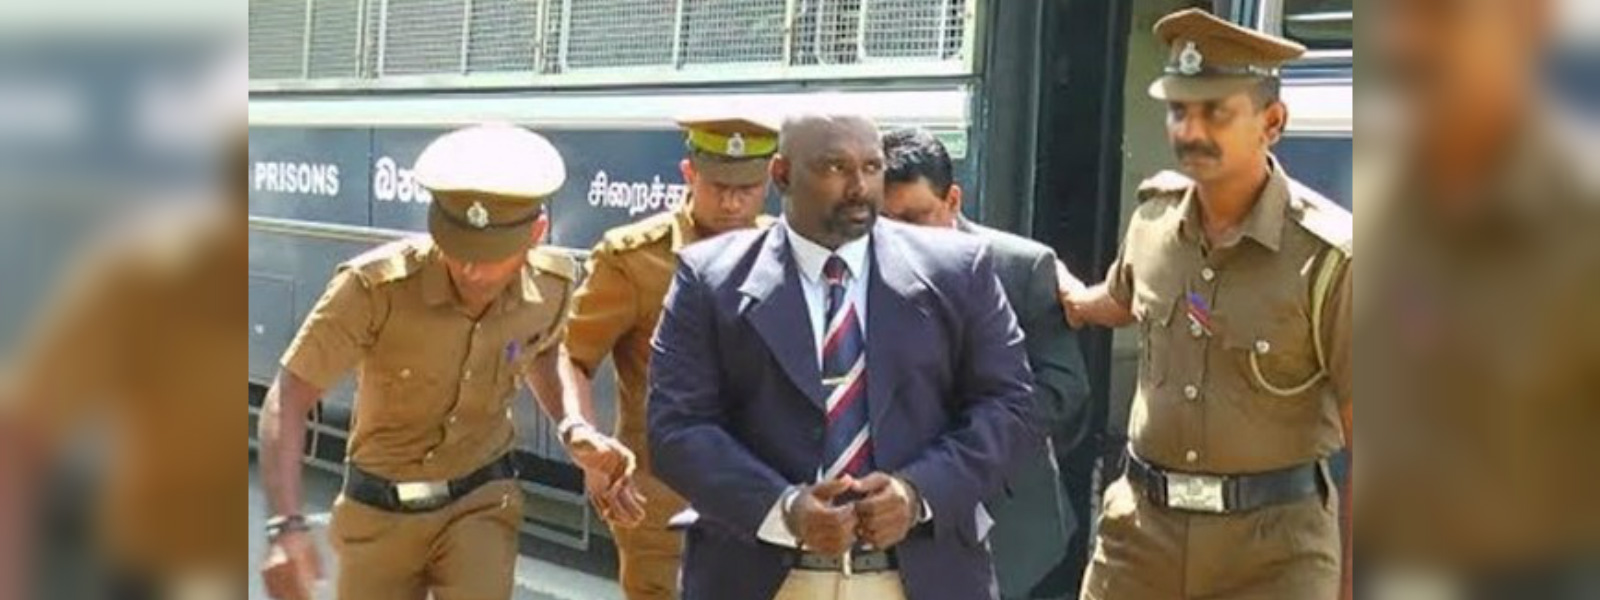 Former Prisons Commissioner further remanded 